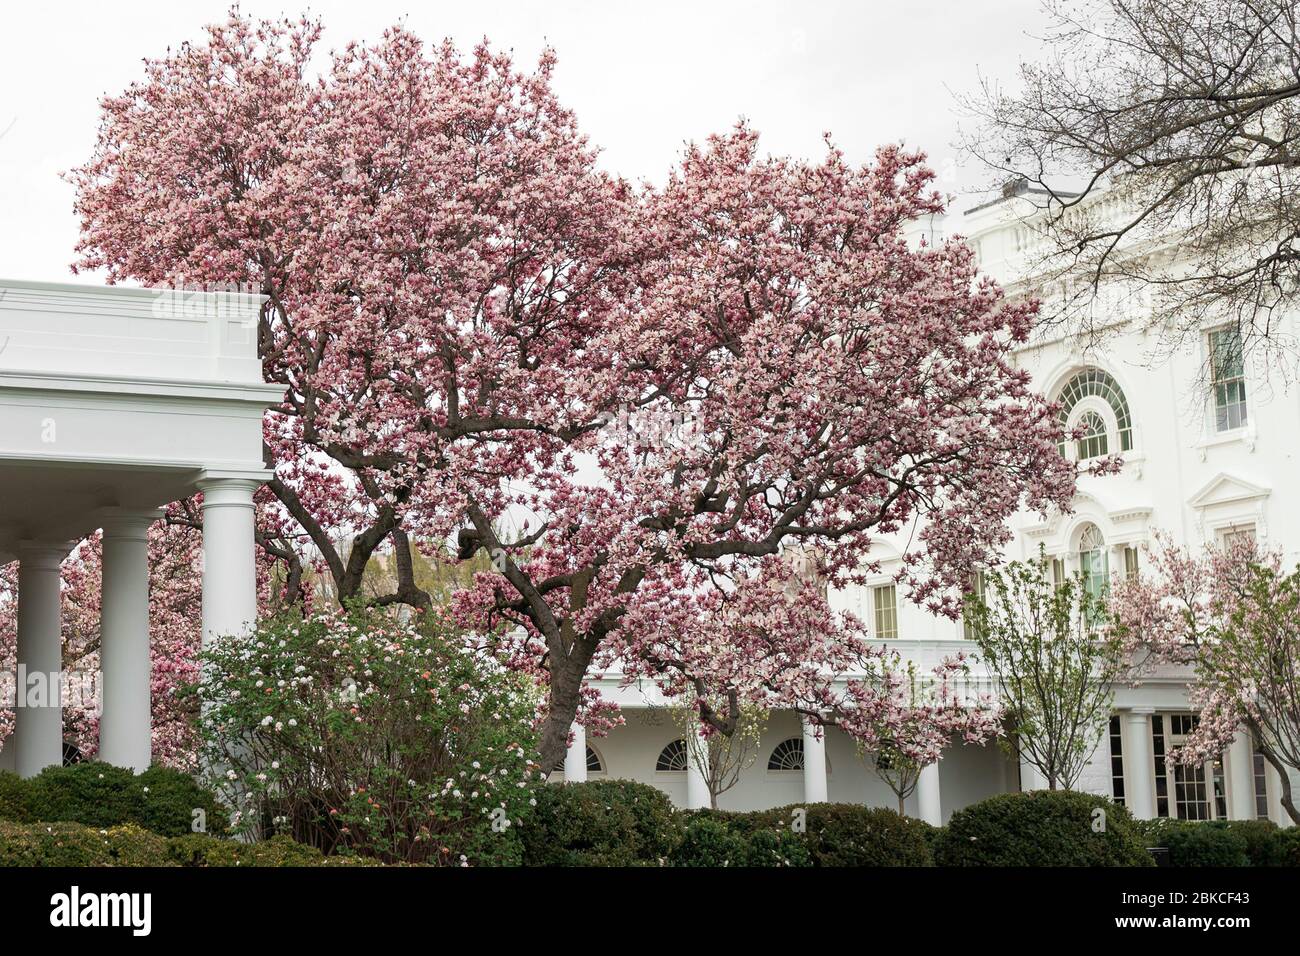 Les arbres sont vus en fleurs mardi 17 mars 2020 dans le jardin des roses de la Maison Blanche. Jardin de roses de la Maison Blanche Banque D'Images